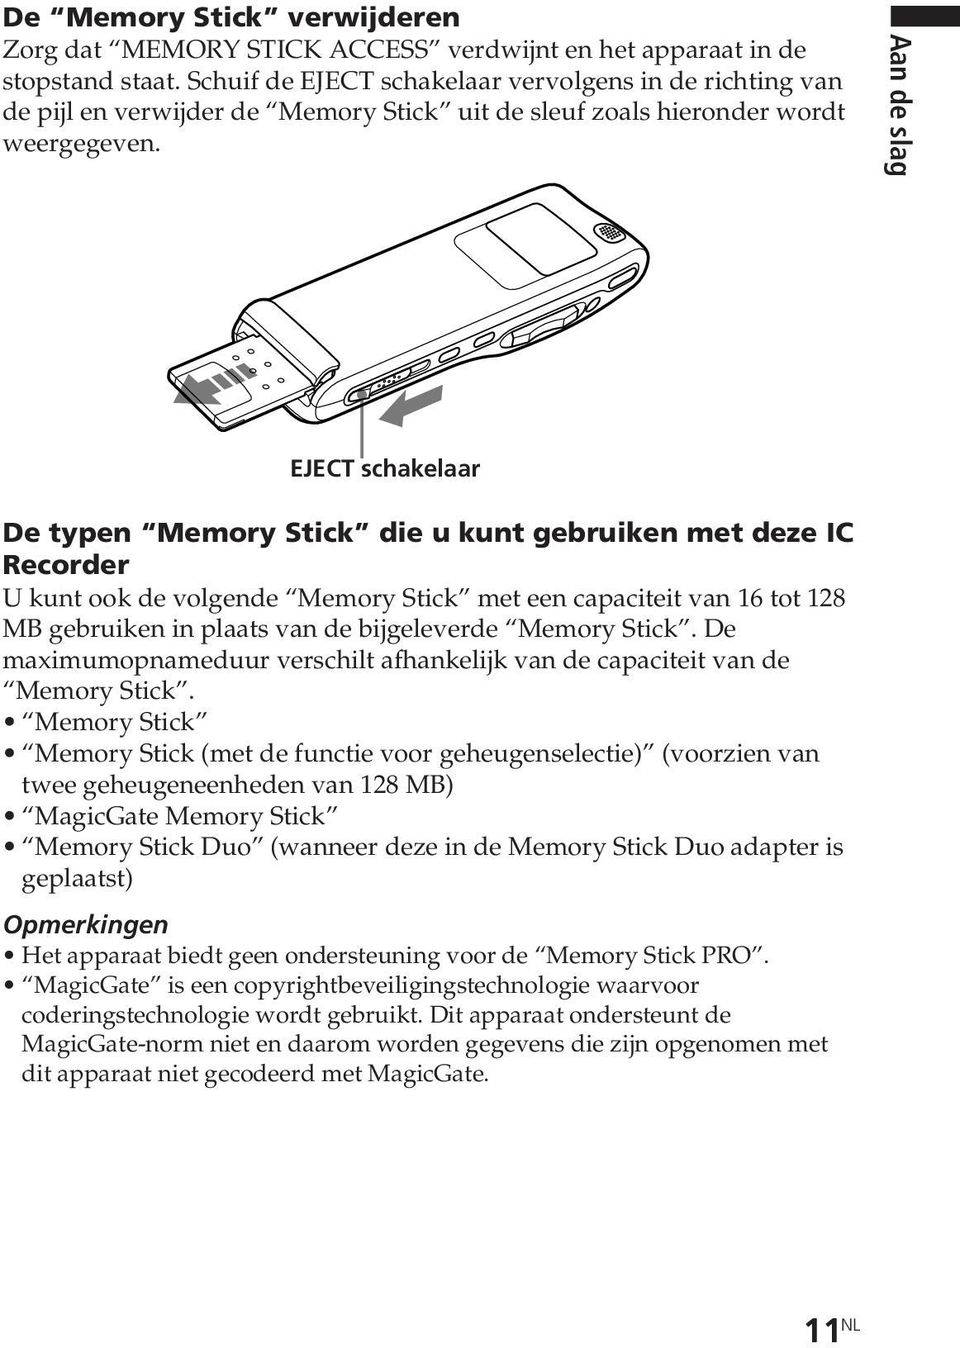 EJECT schakelaar De typen Memory Stick die u kunt gebruiken met deze IC Recorder U kunt ook de volgende Memory Stick met een capaciteit van 16 tot 128 MB gebruiken in plaats van de bijgeleverde